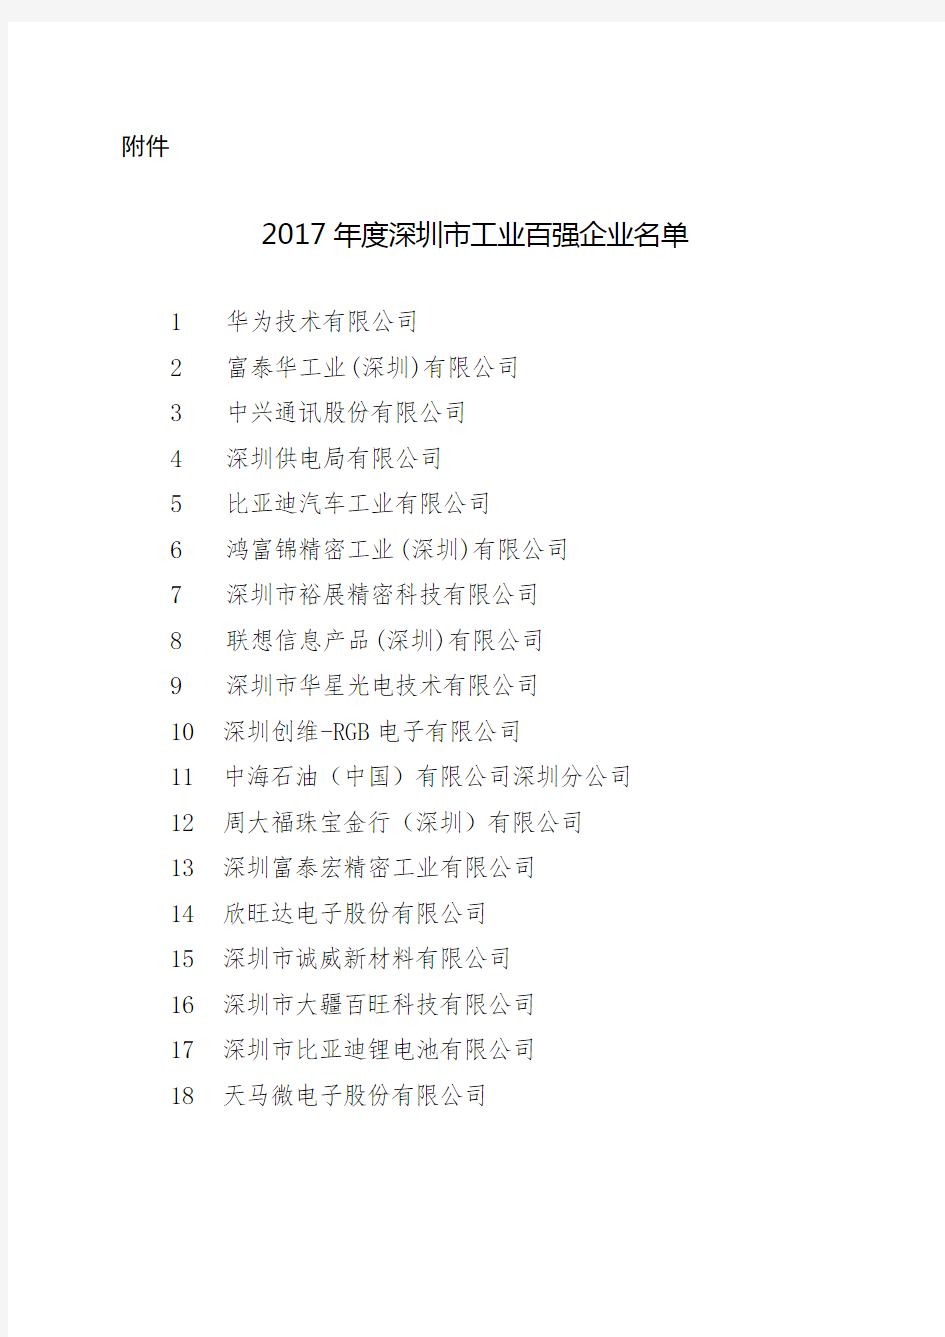 关于公布2017年度深圳市工业百强企业名单的通知